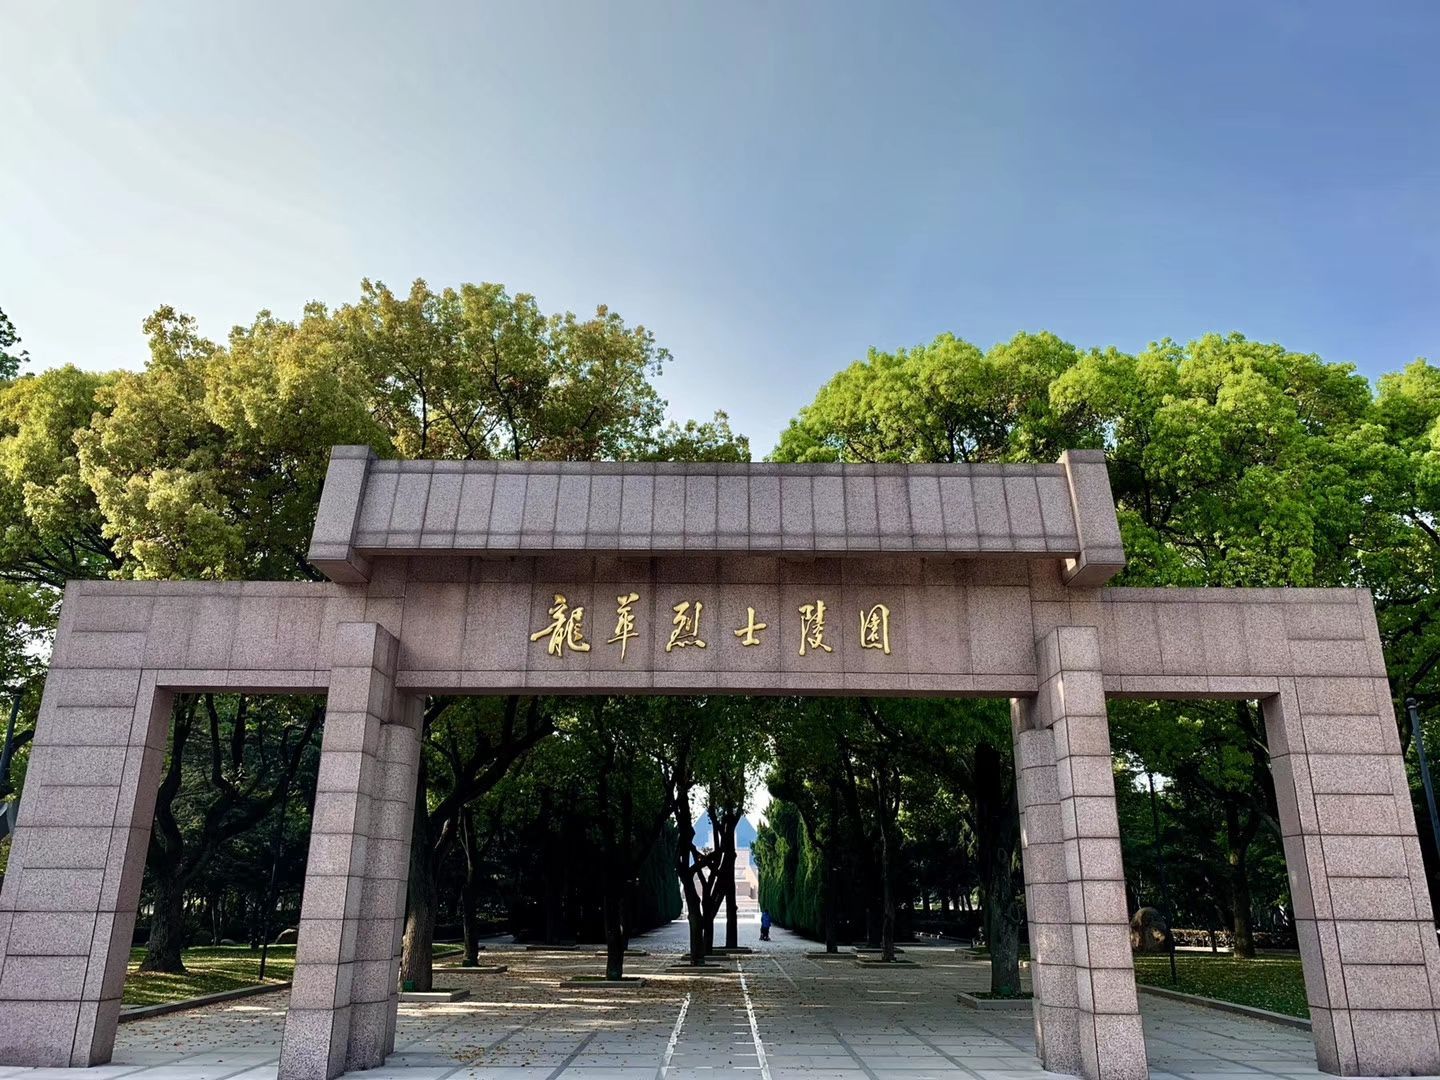 360°无死角，龙华塔历经9个月的维护保养，回归视野 -上海市文旅推广网-上海市文化和旅游局 提供专业文化和旅游及会展信息资讯